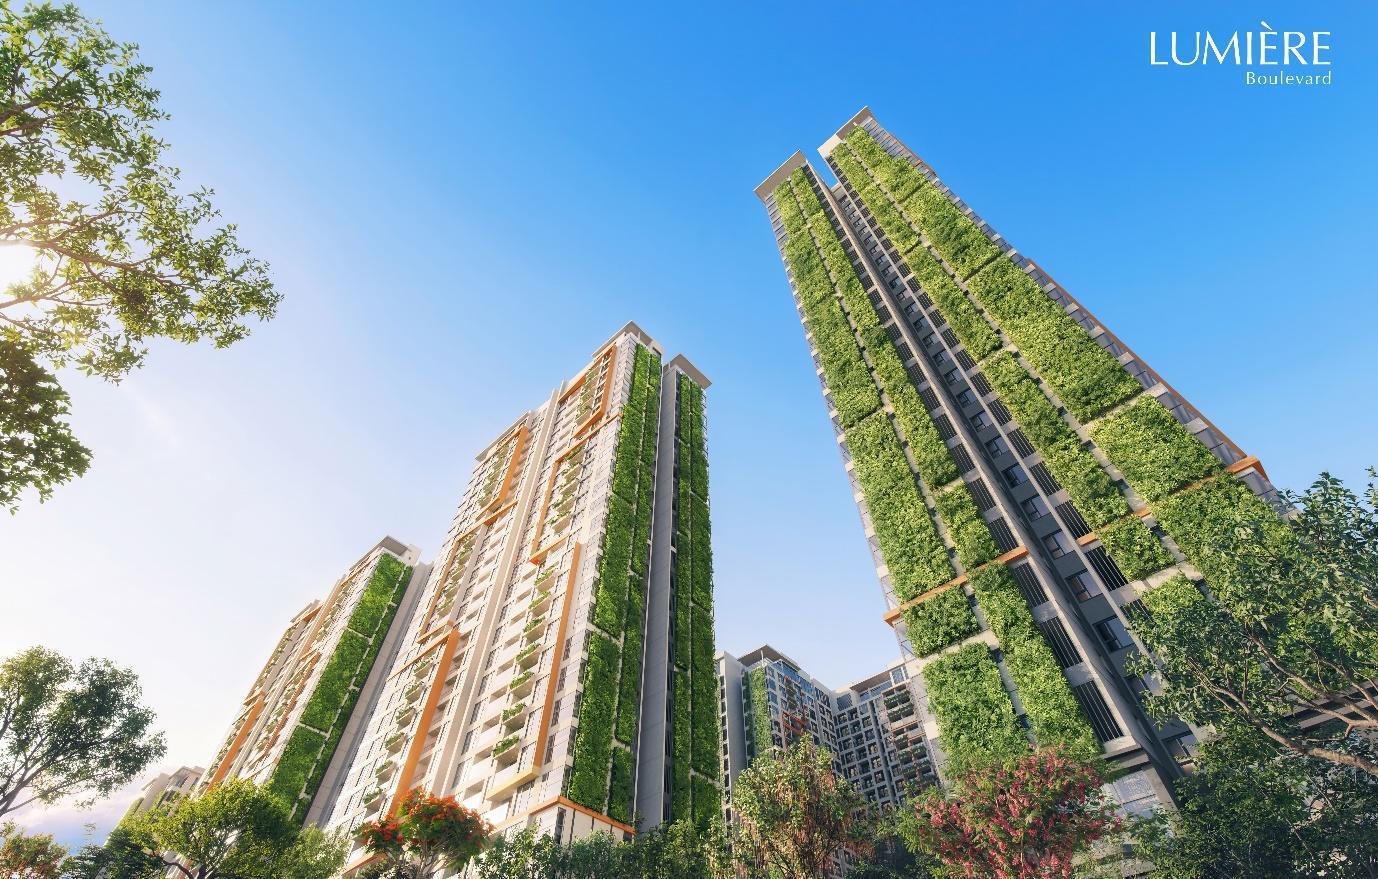 LUMIÈRE Boulevard tuyệt phẩm có kiến trúc xanh 3D hàng đầu Việt Nam